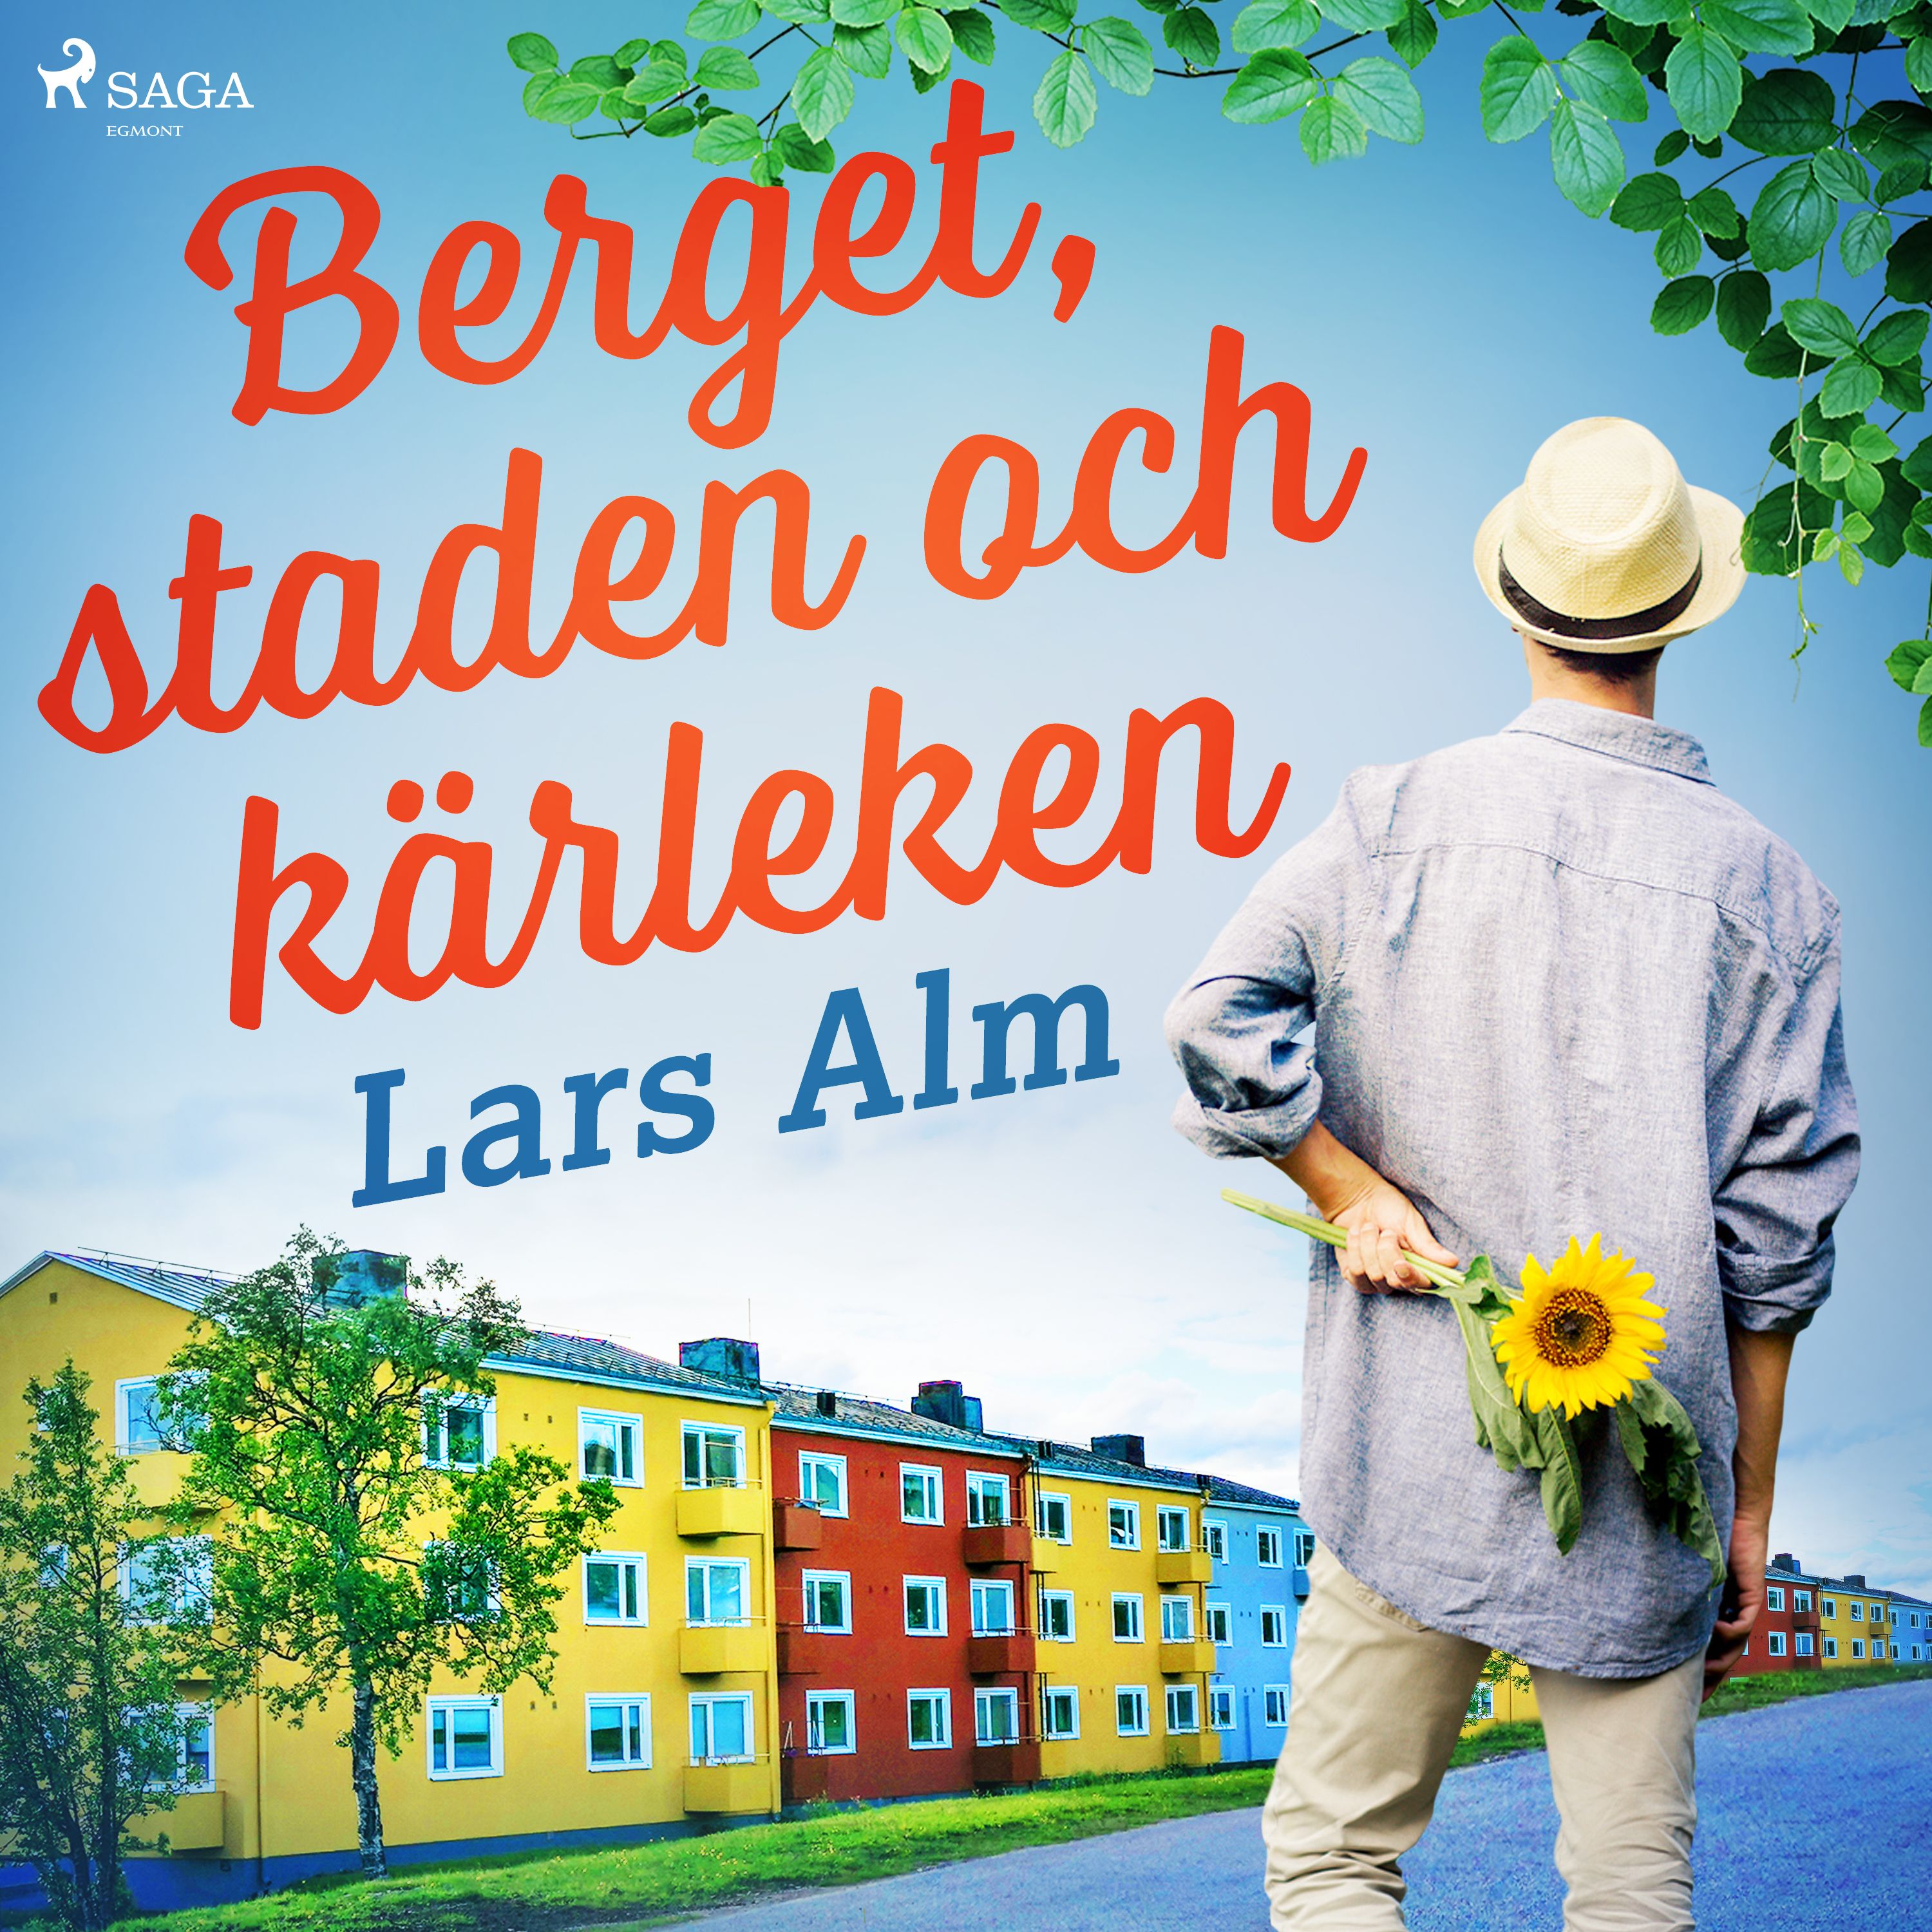 Berget, staden och kärleken, audiobook by Lars Alm